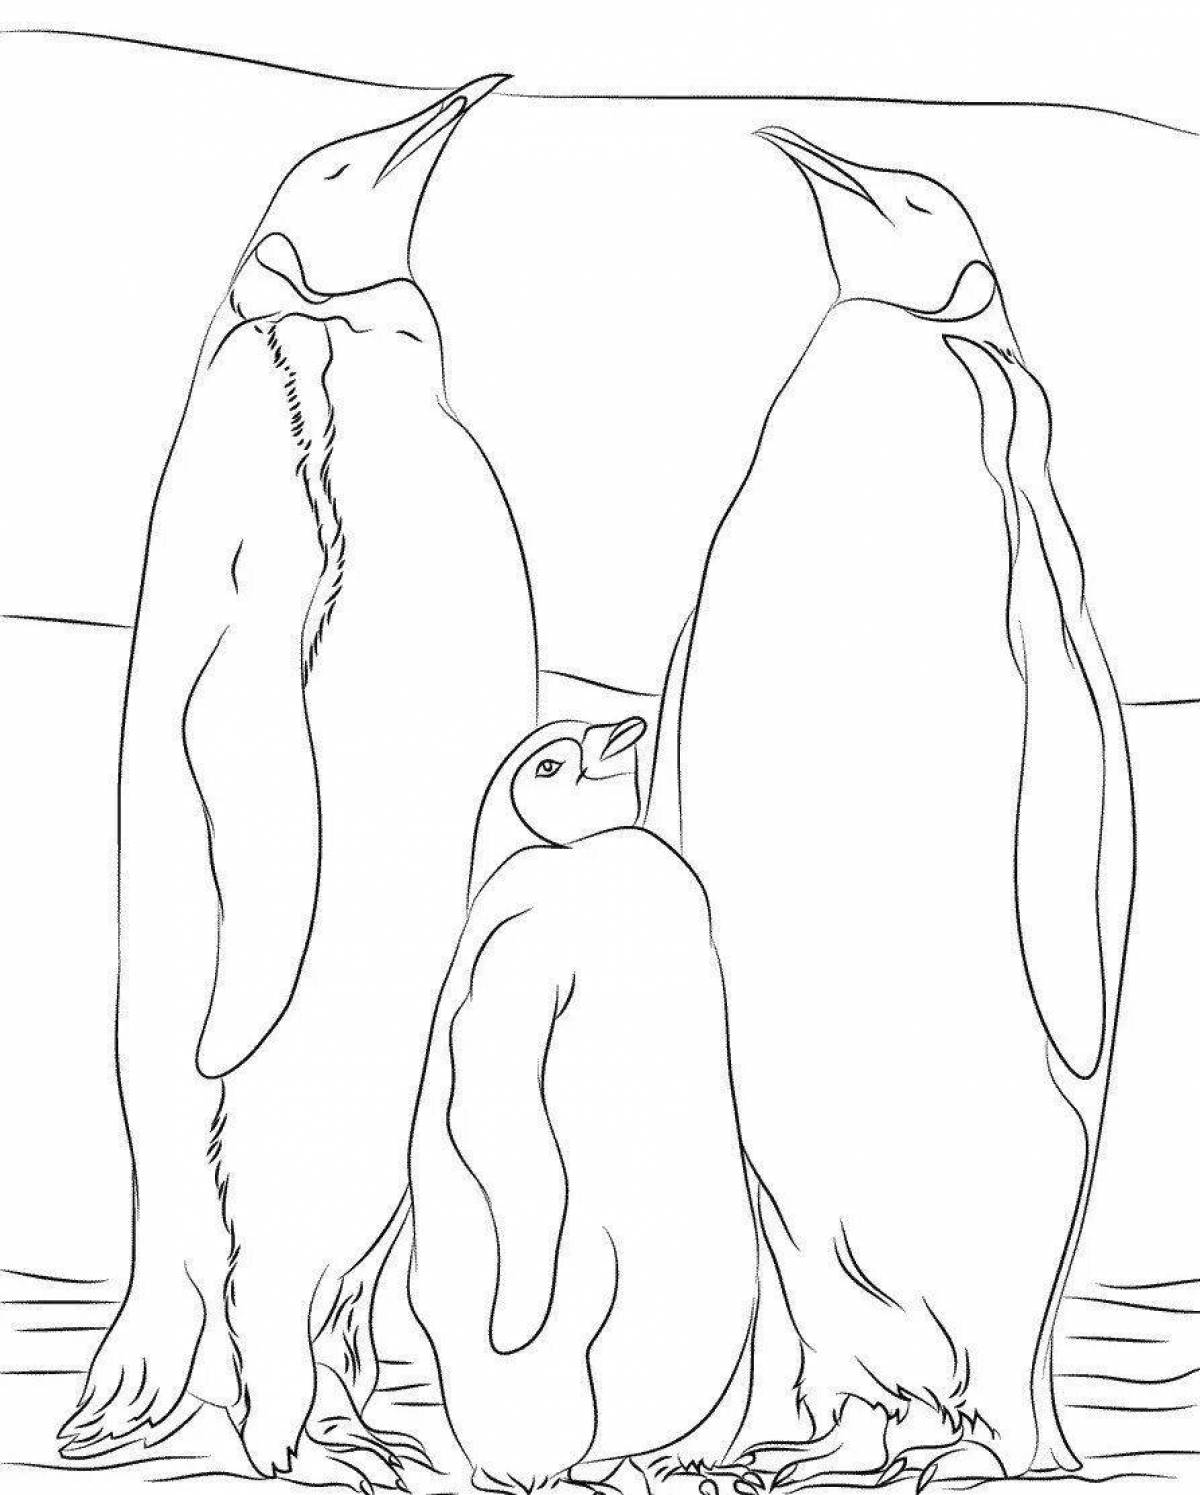 Странная раскраска семьи пингвинов